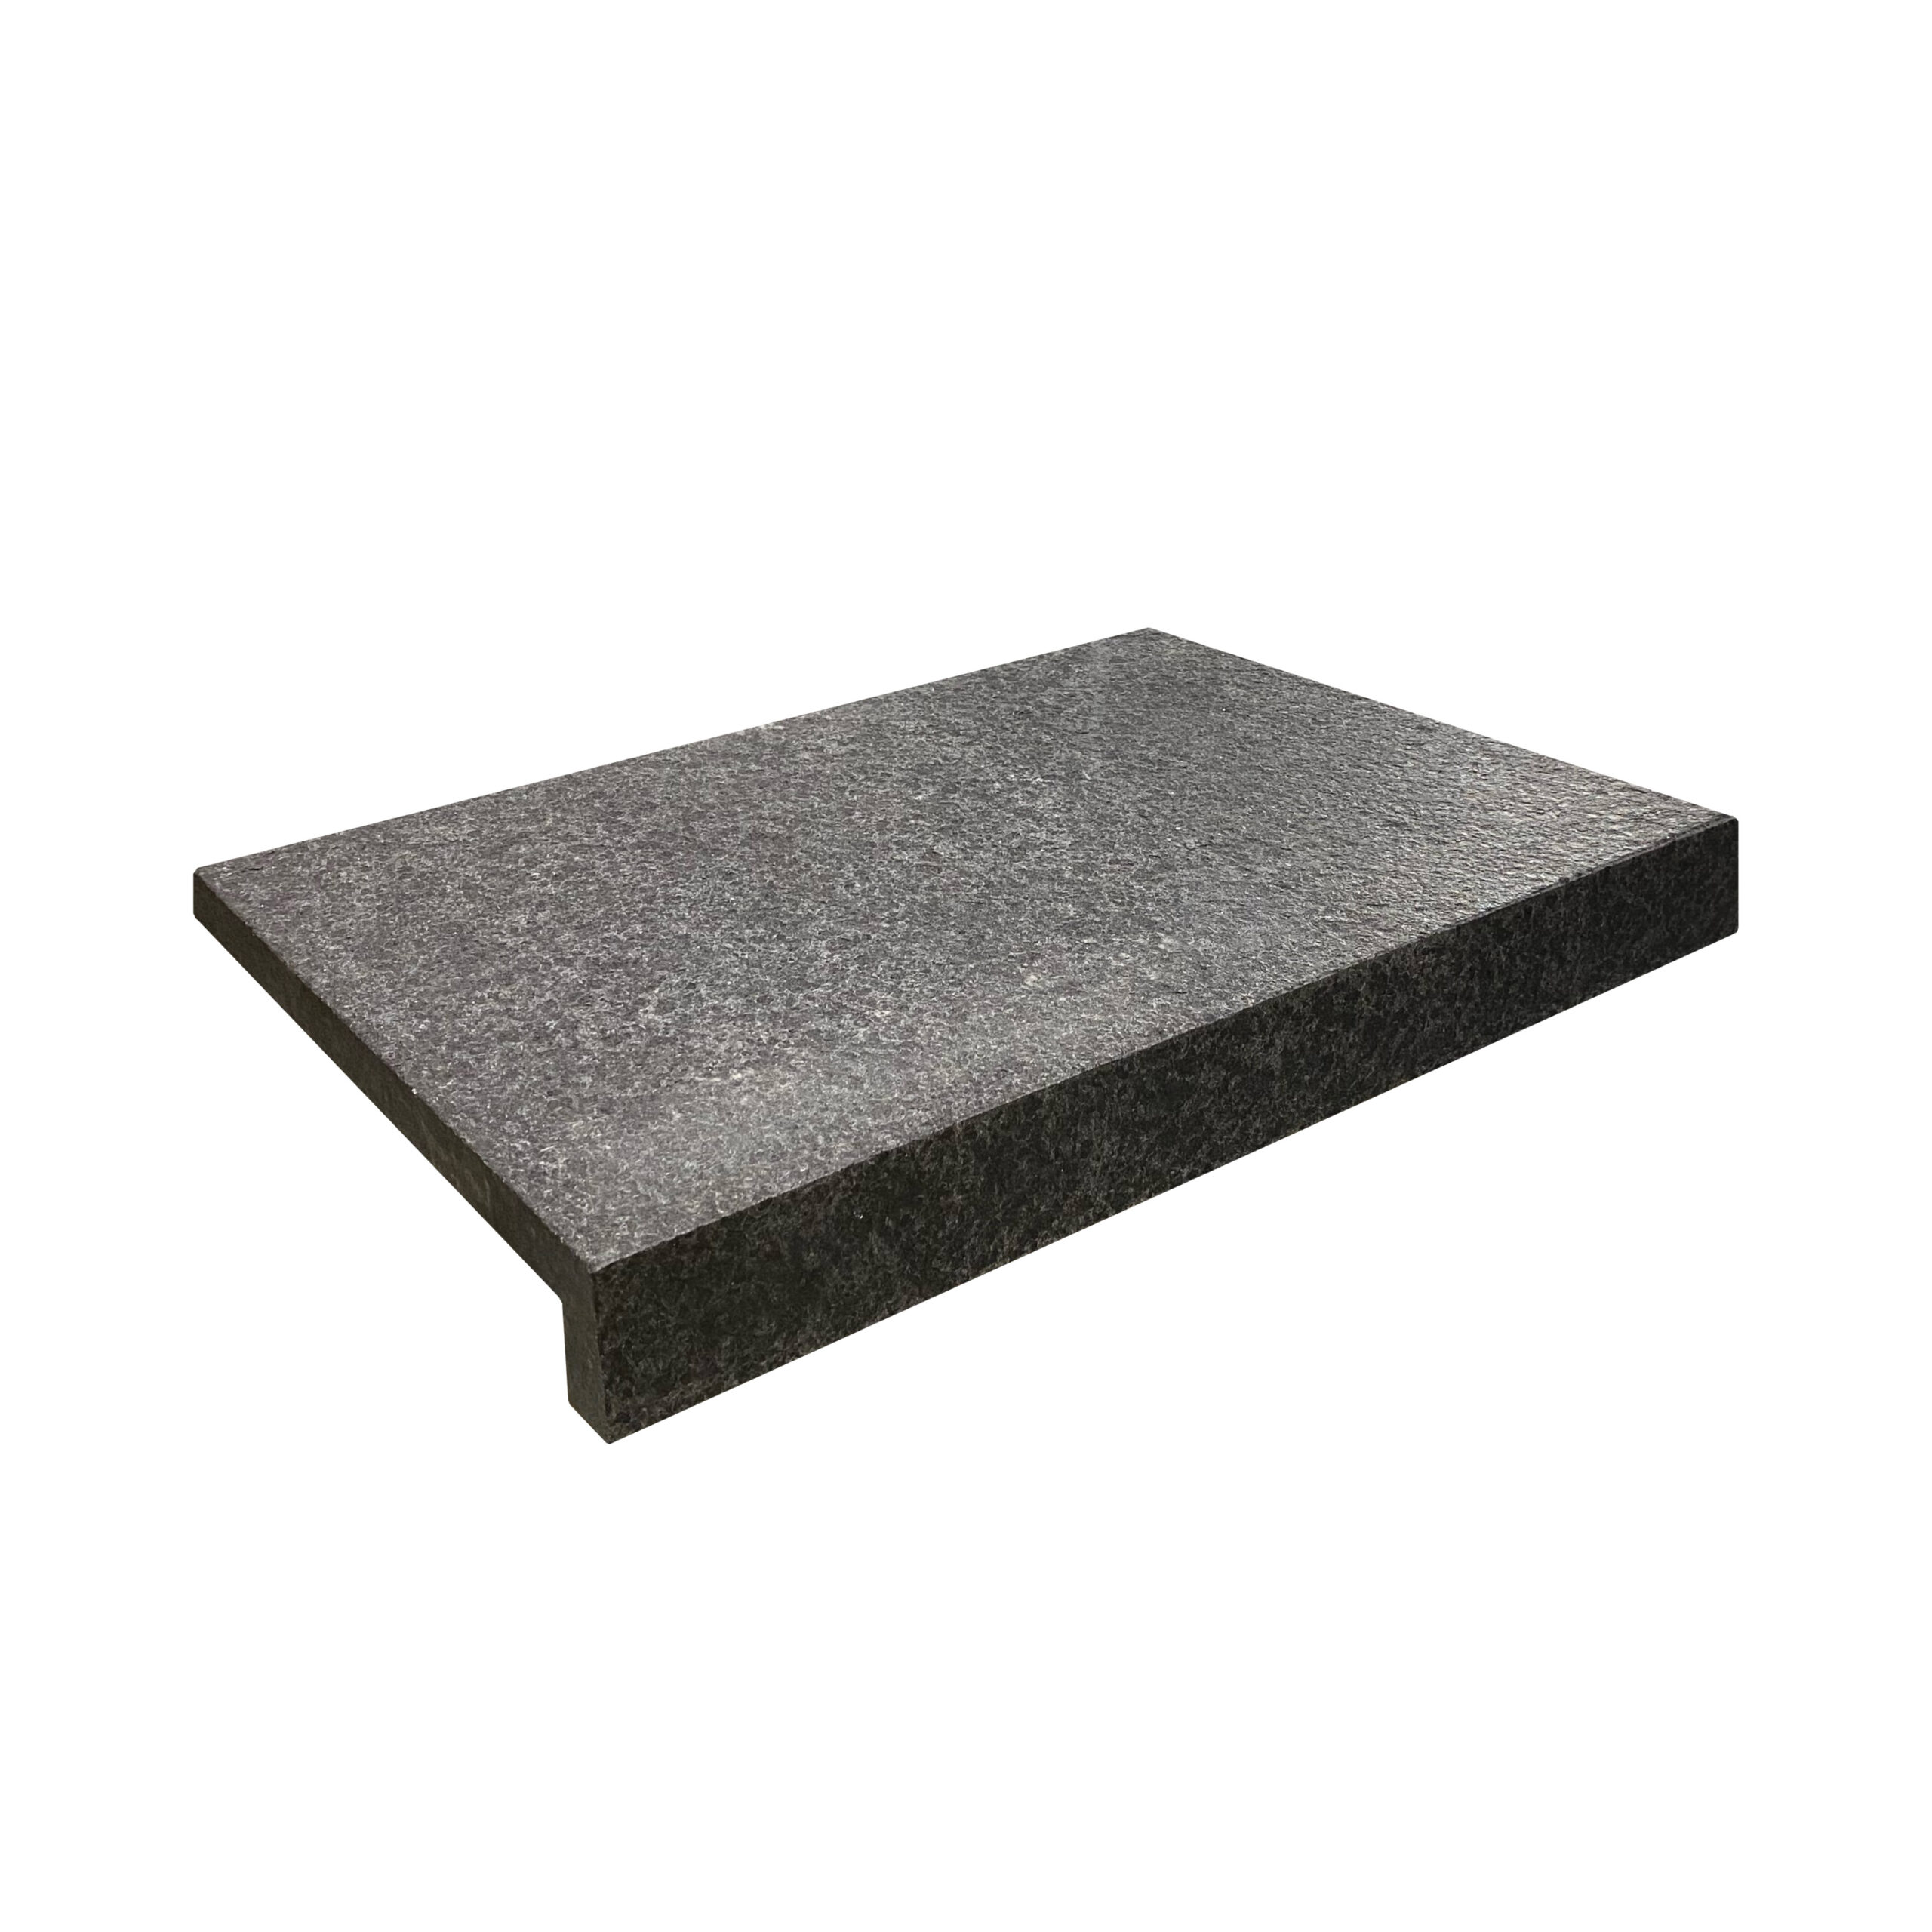 Black Granite Rebated Edge 600 x 400 Paver